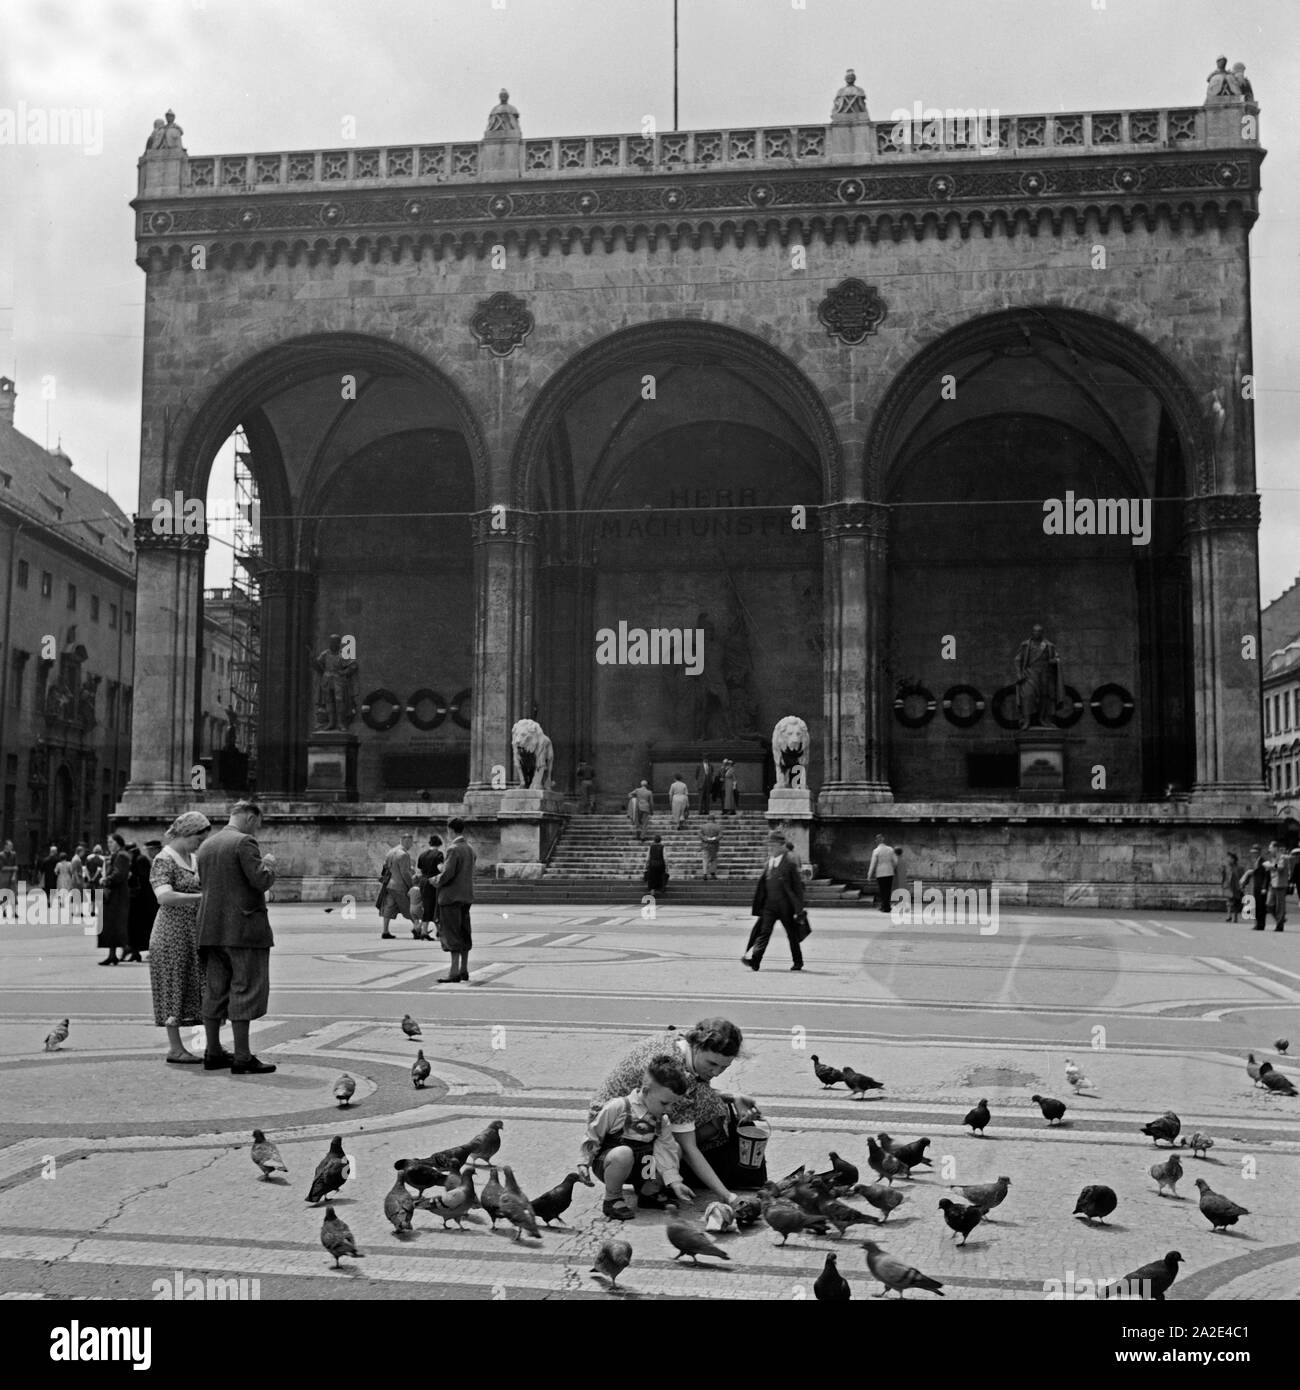 Die Feldherrnhalle auf dem Odeonsplatz in München, Deutschland 1930er Jahre. Feldherrhalle hall on the Odeonsplatz square at Munich, Germany 1930s. Stock Photo